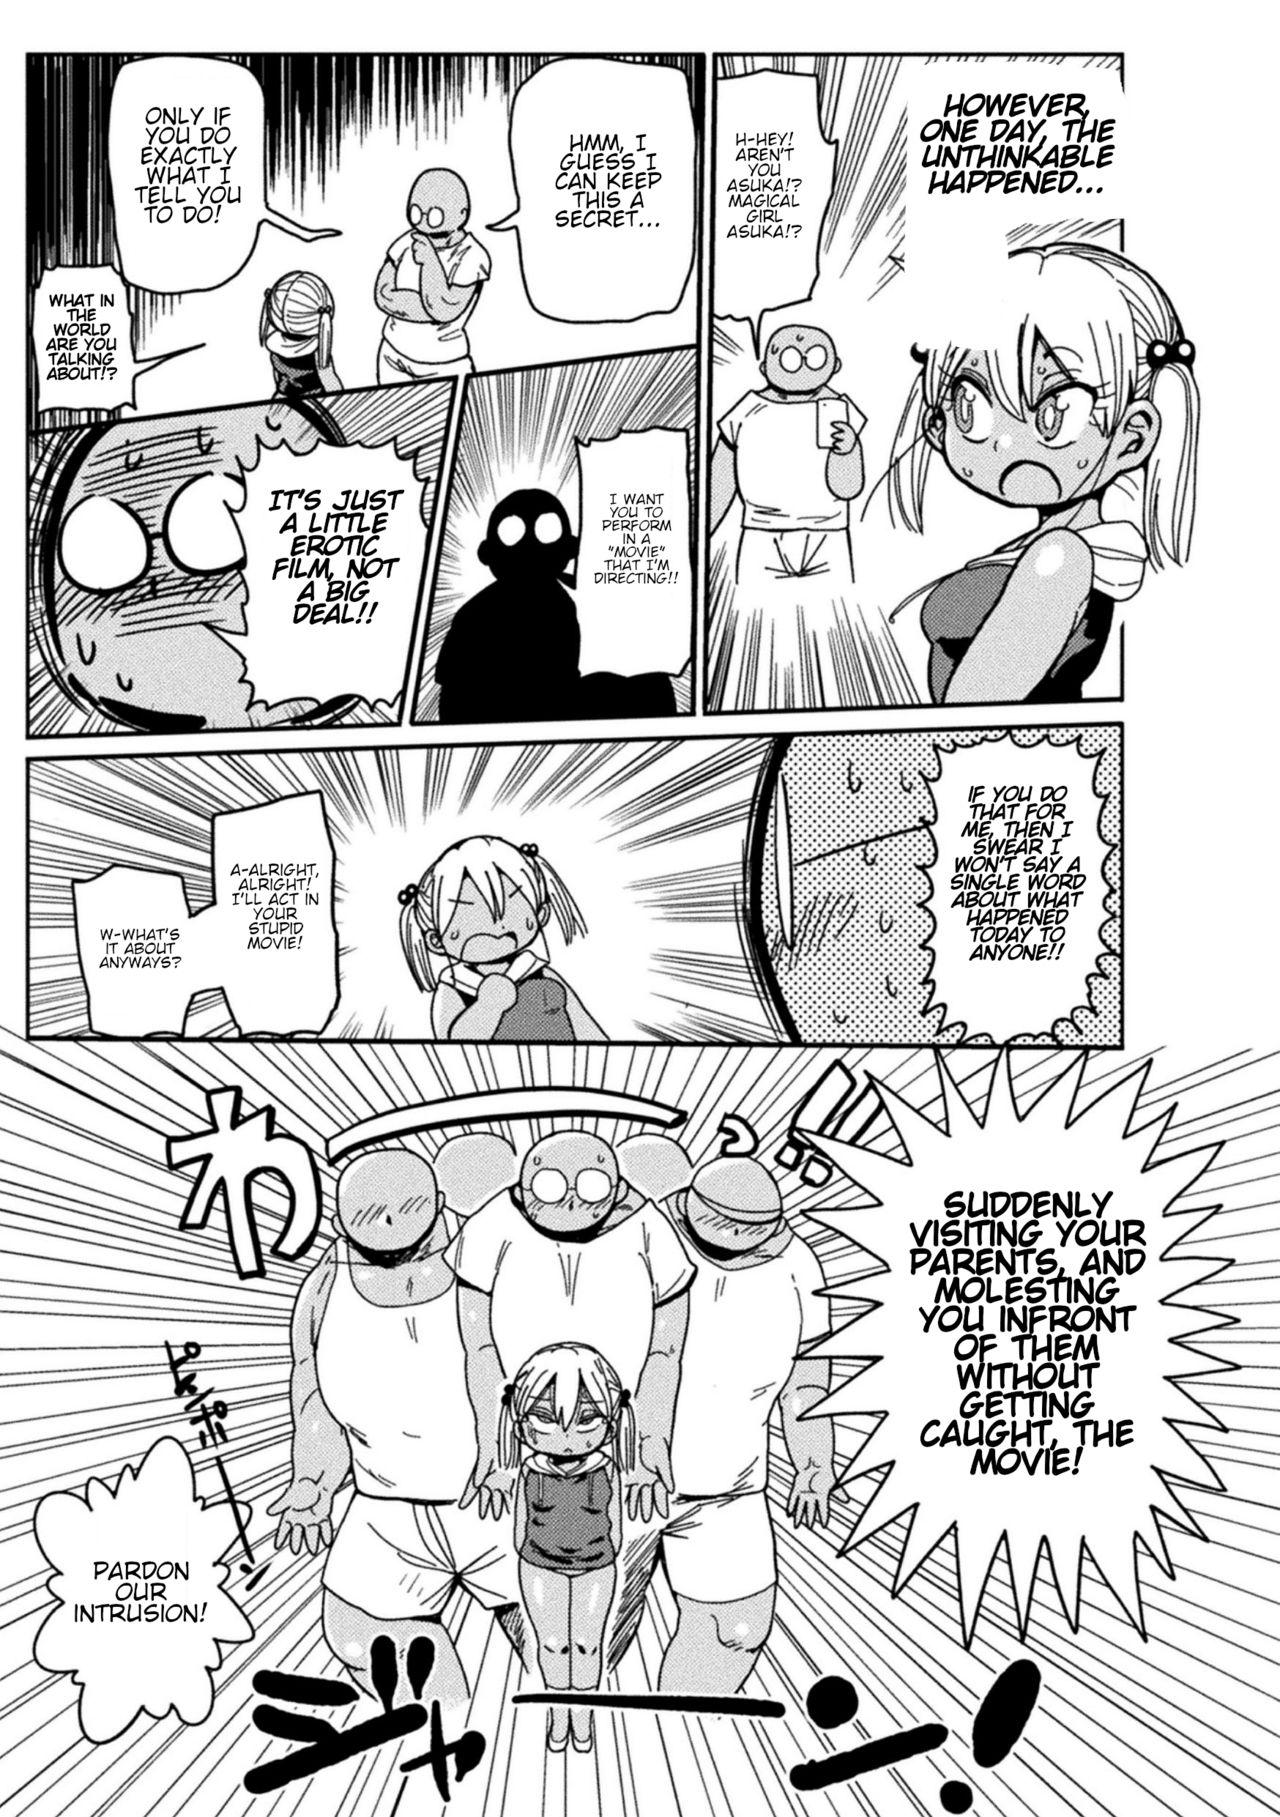 Secret Yosei no Mahou Shojo Asuka Pendeja - Page 3